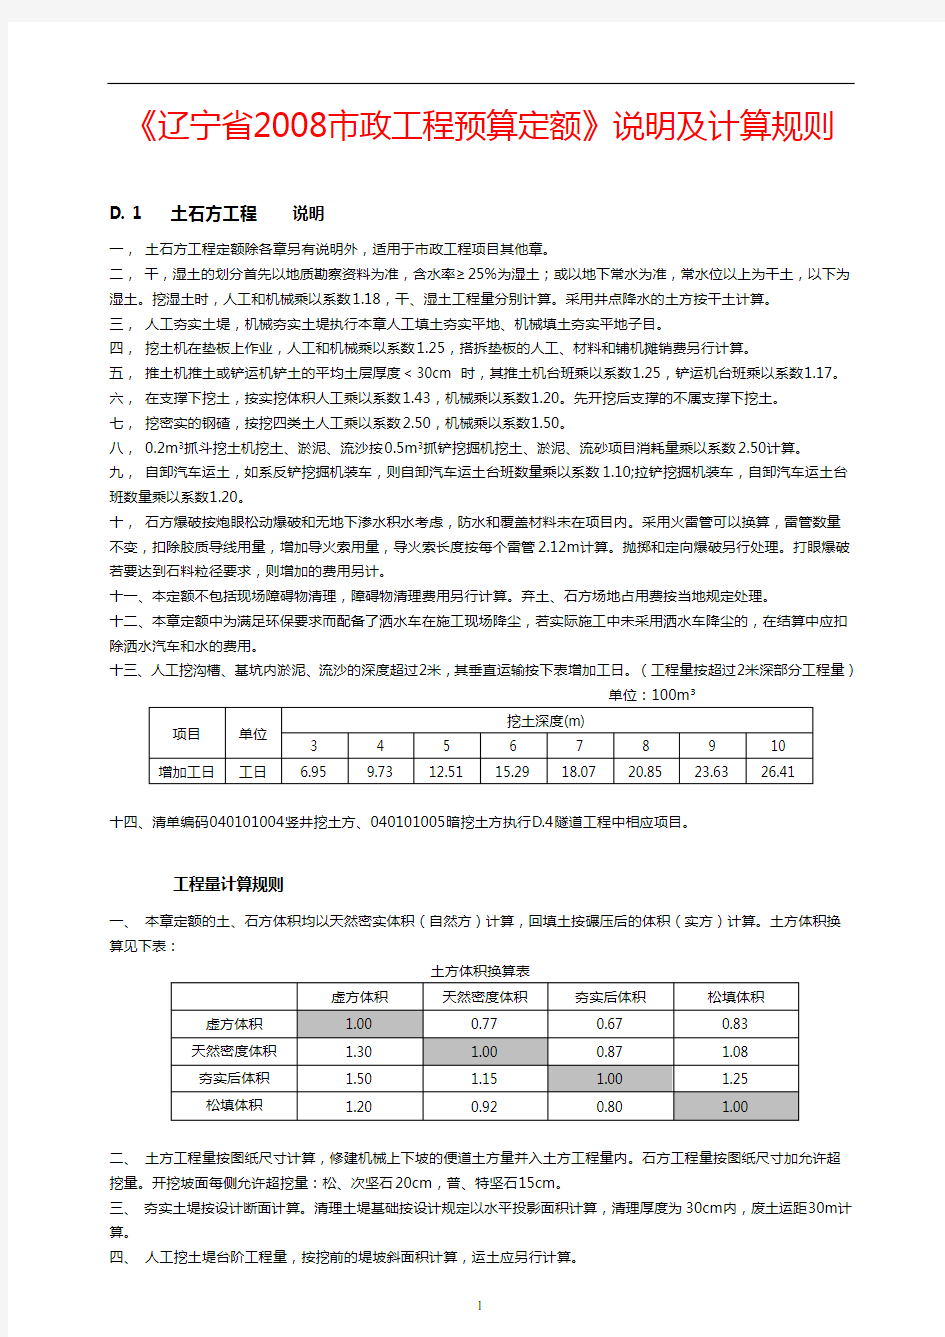 《辽宁省2008市政工程预算定额》说明及工程量计算规则分析